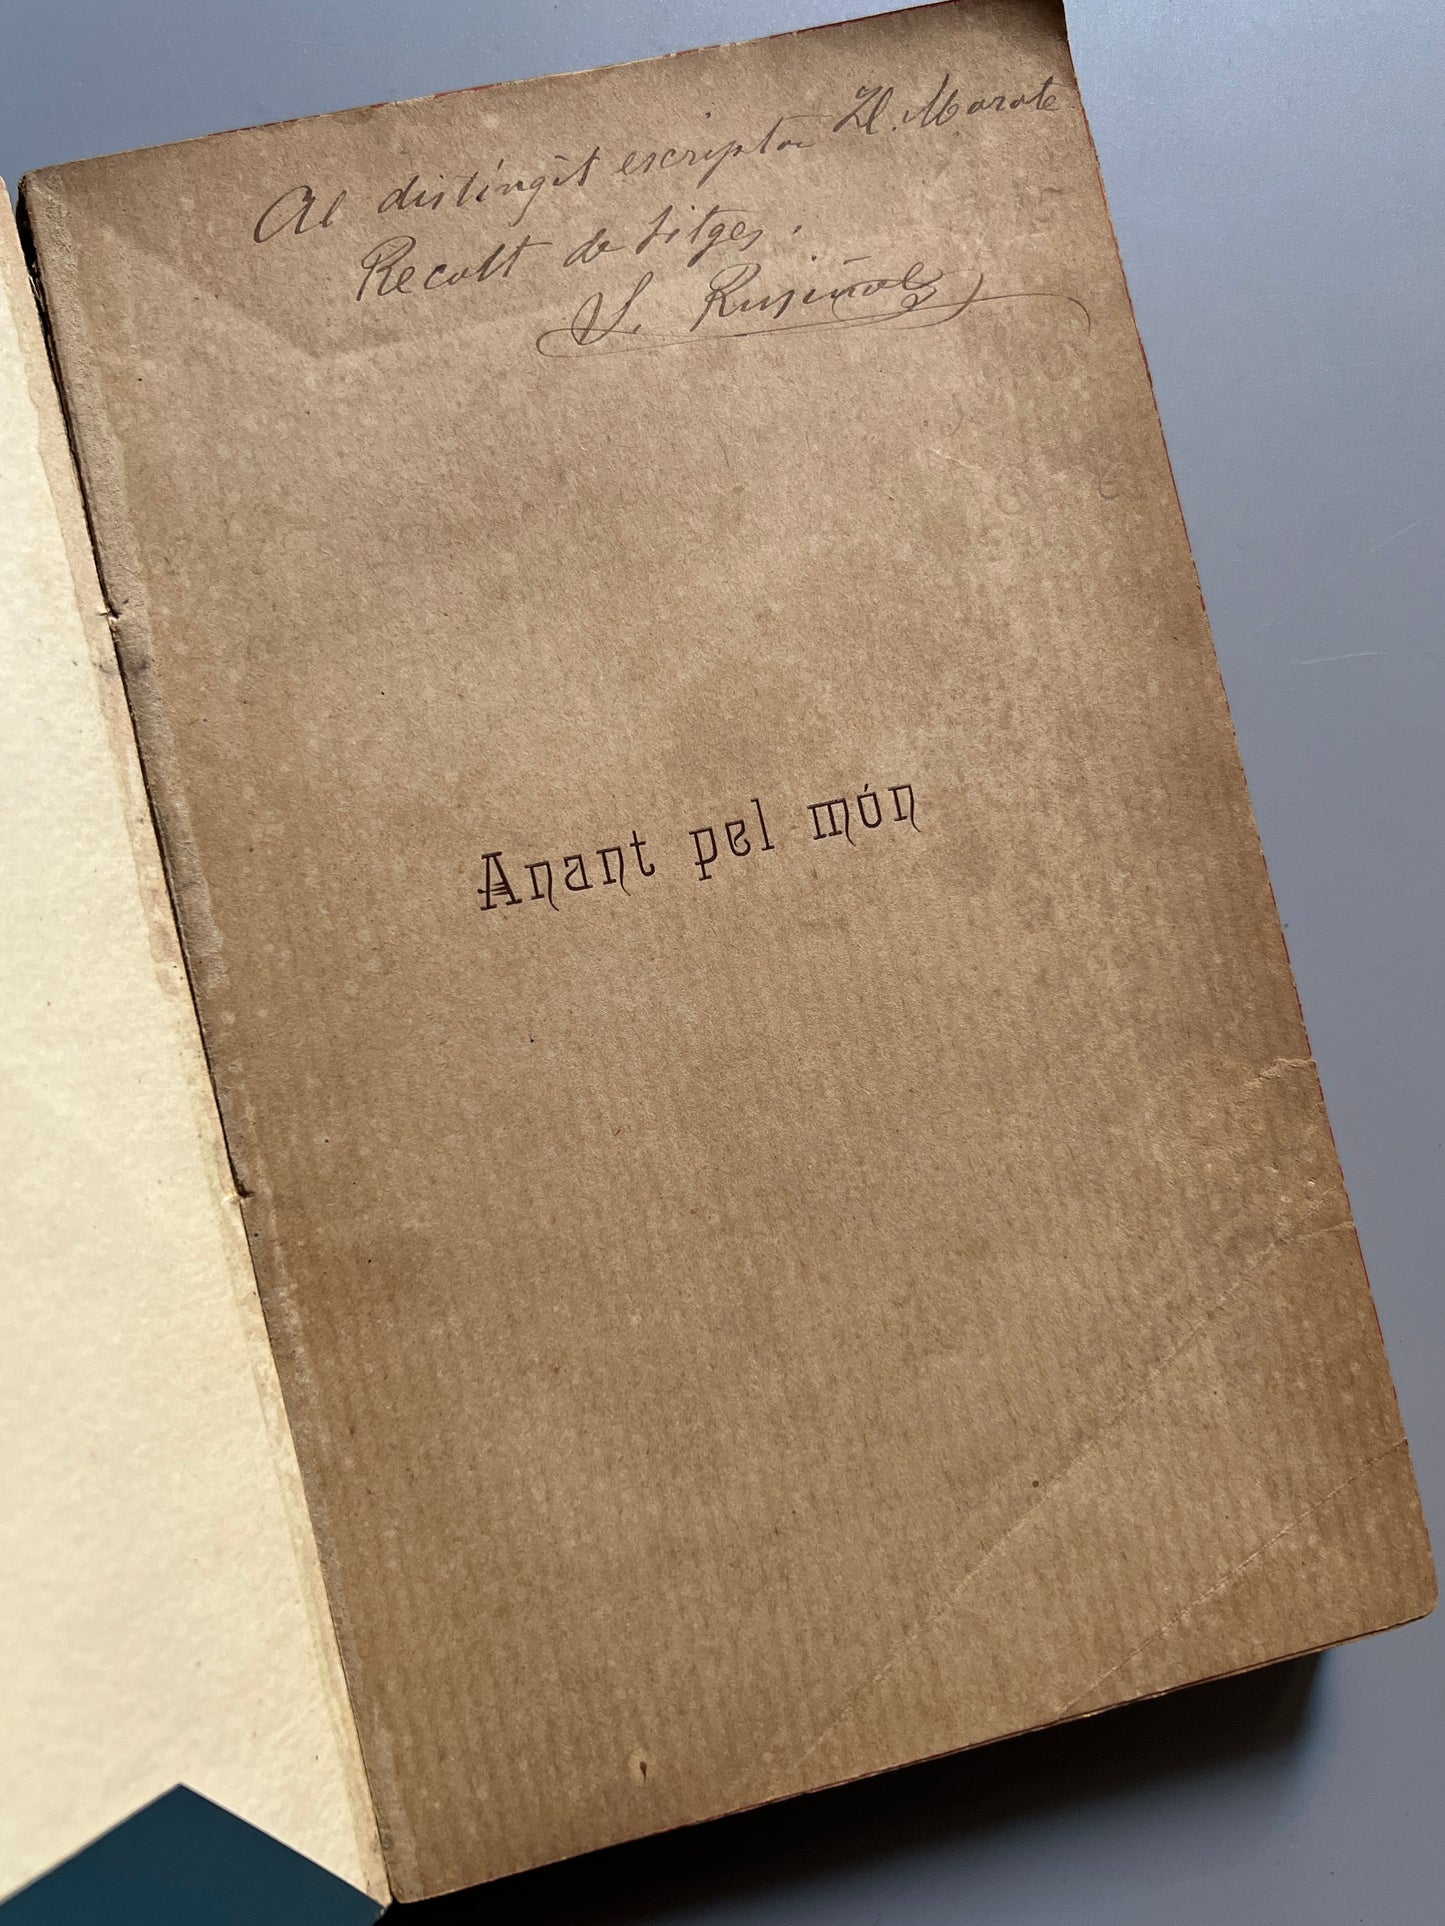 Anant pel món, Santiago Rusiñol (dedicado y firmado) - Tip. L'Avenç, 1896